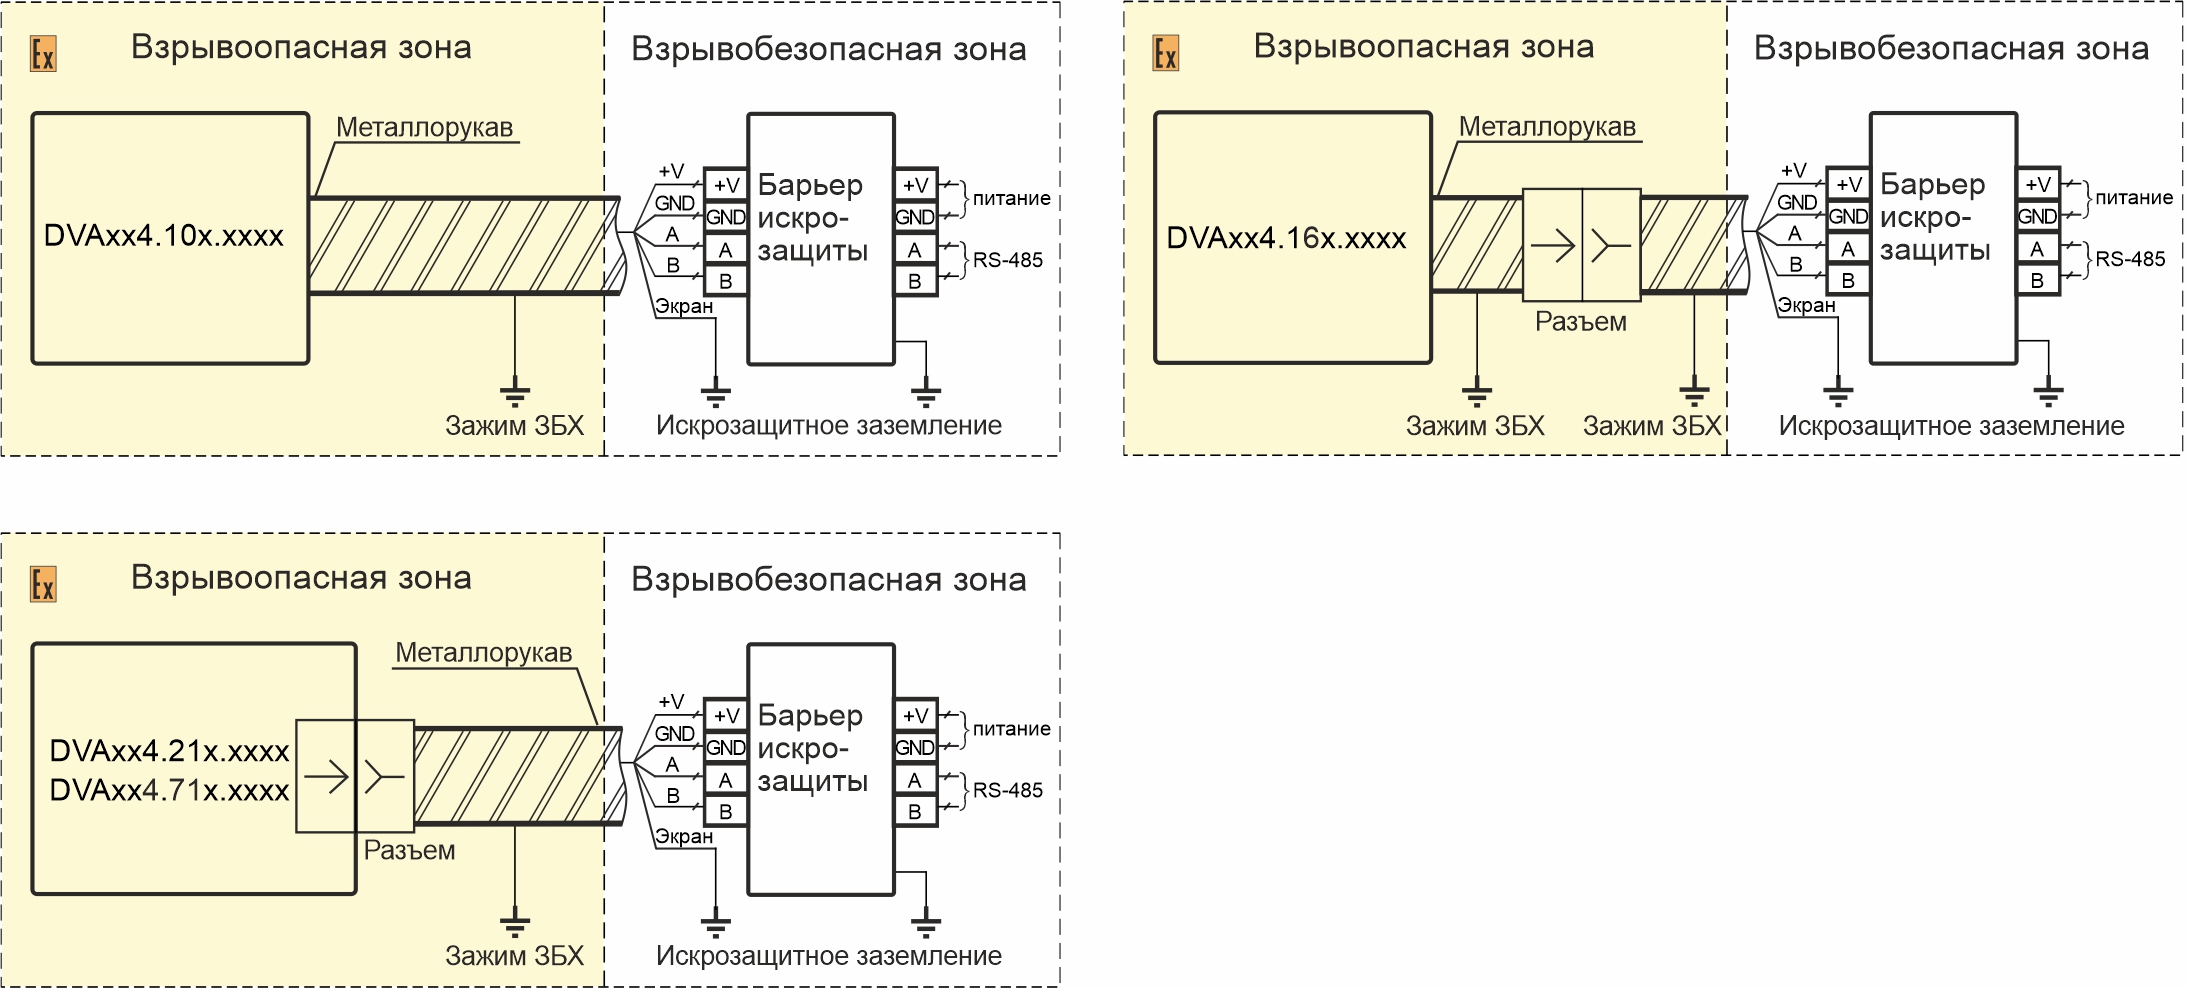 Схемы подключения вибропреобразователей DVA484.XXX